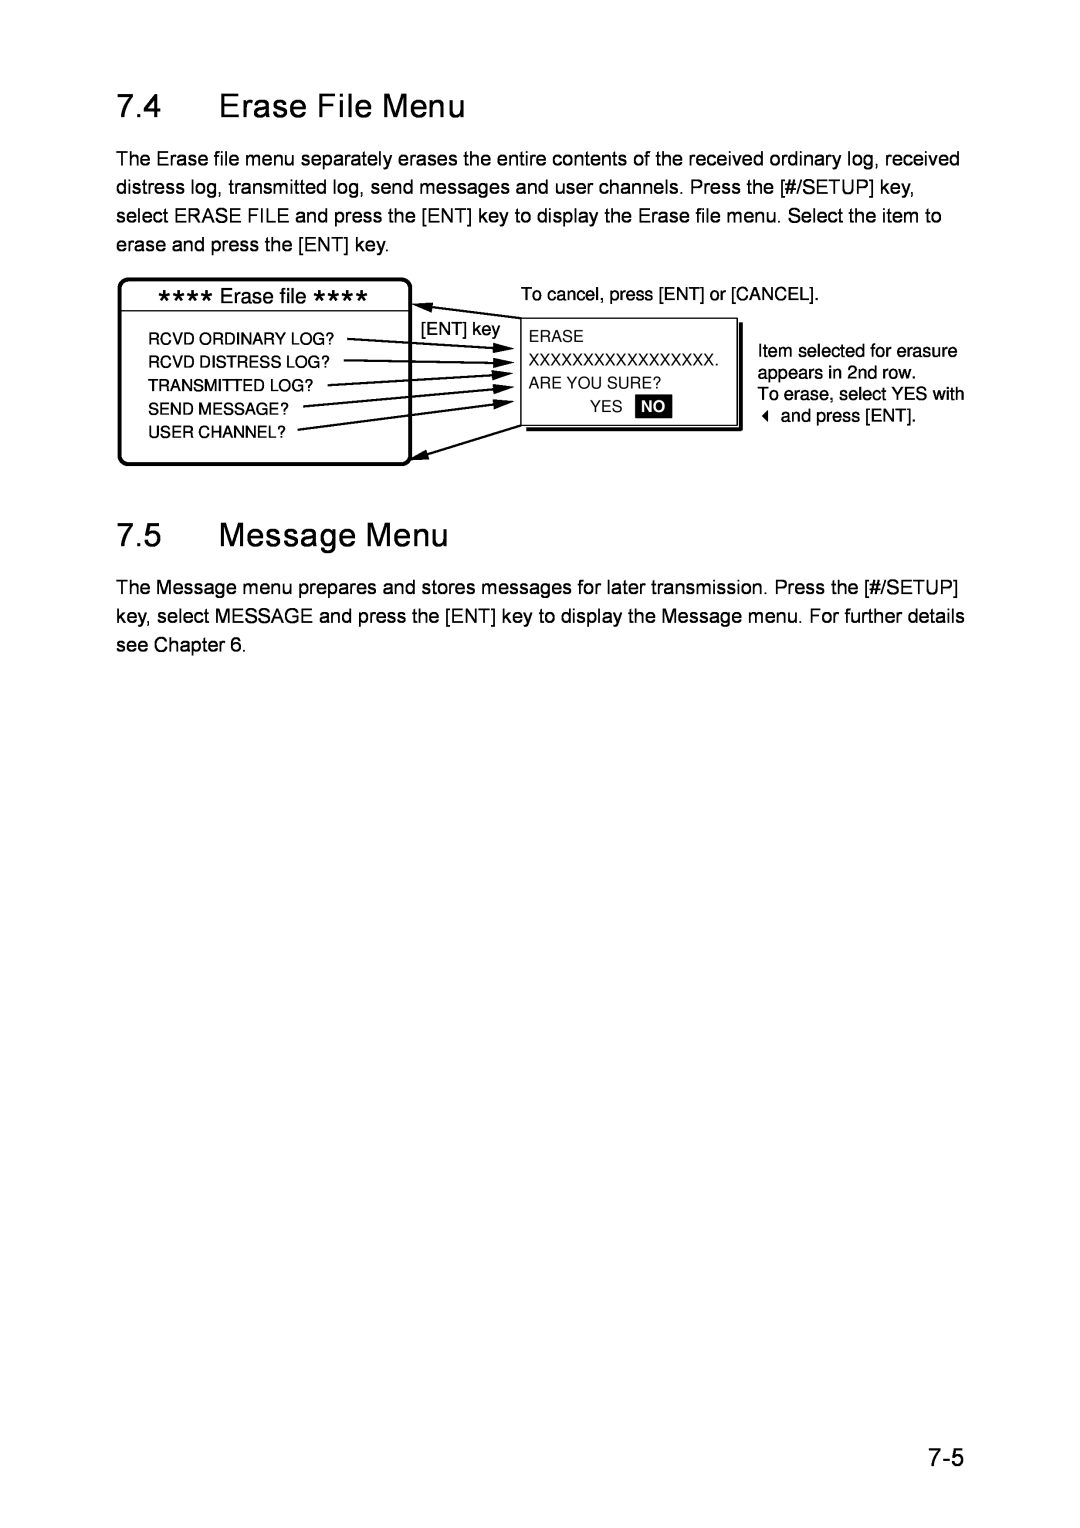 Furuno RC-1500-1T manual Erase File Menu, Message Menu, Erase file 